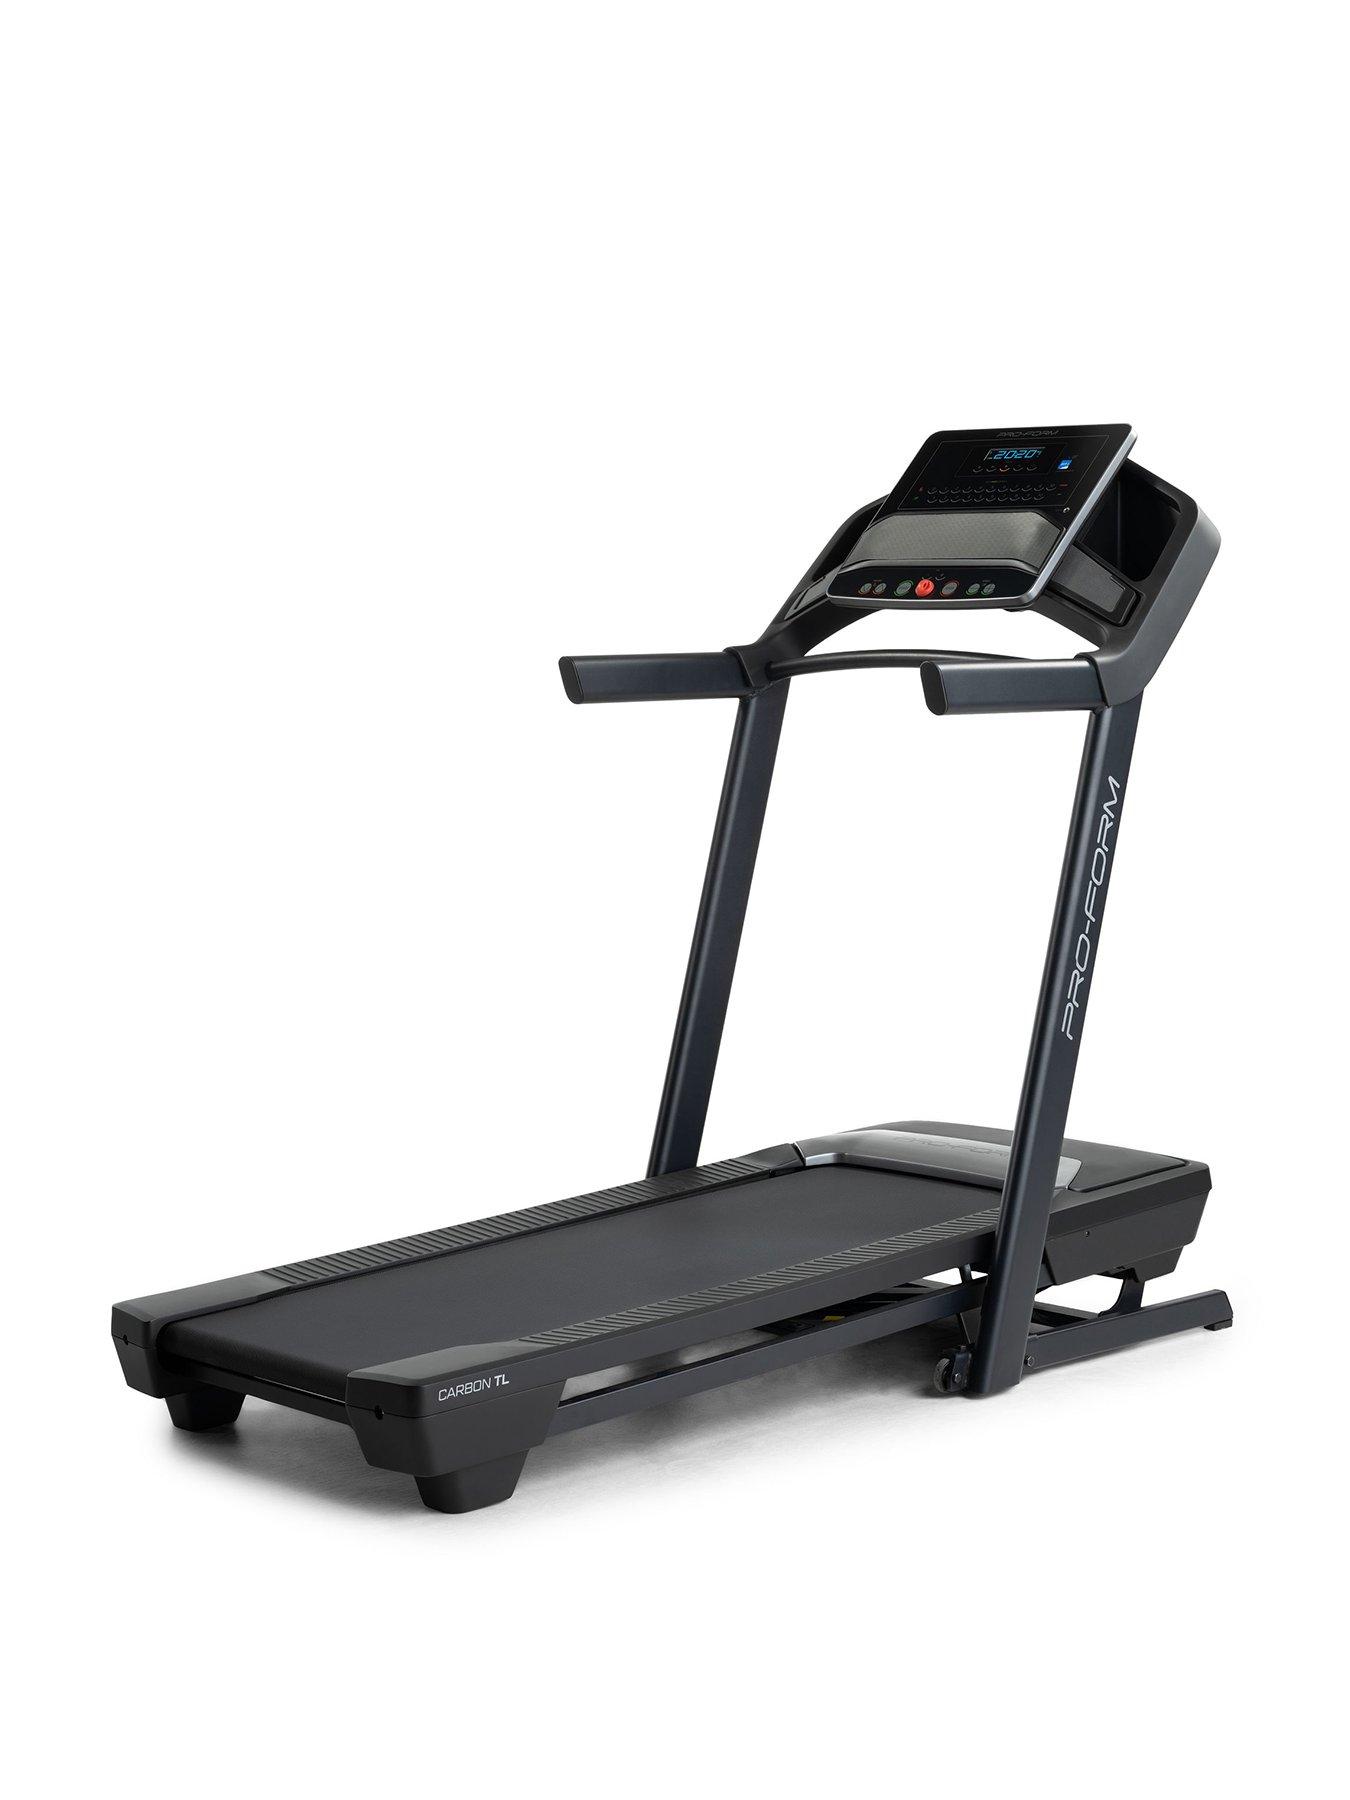 Pro-Form Proform Carbon TL treadmill